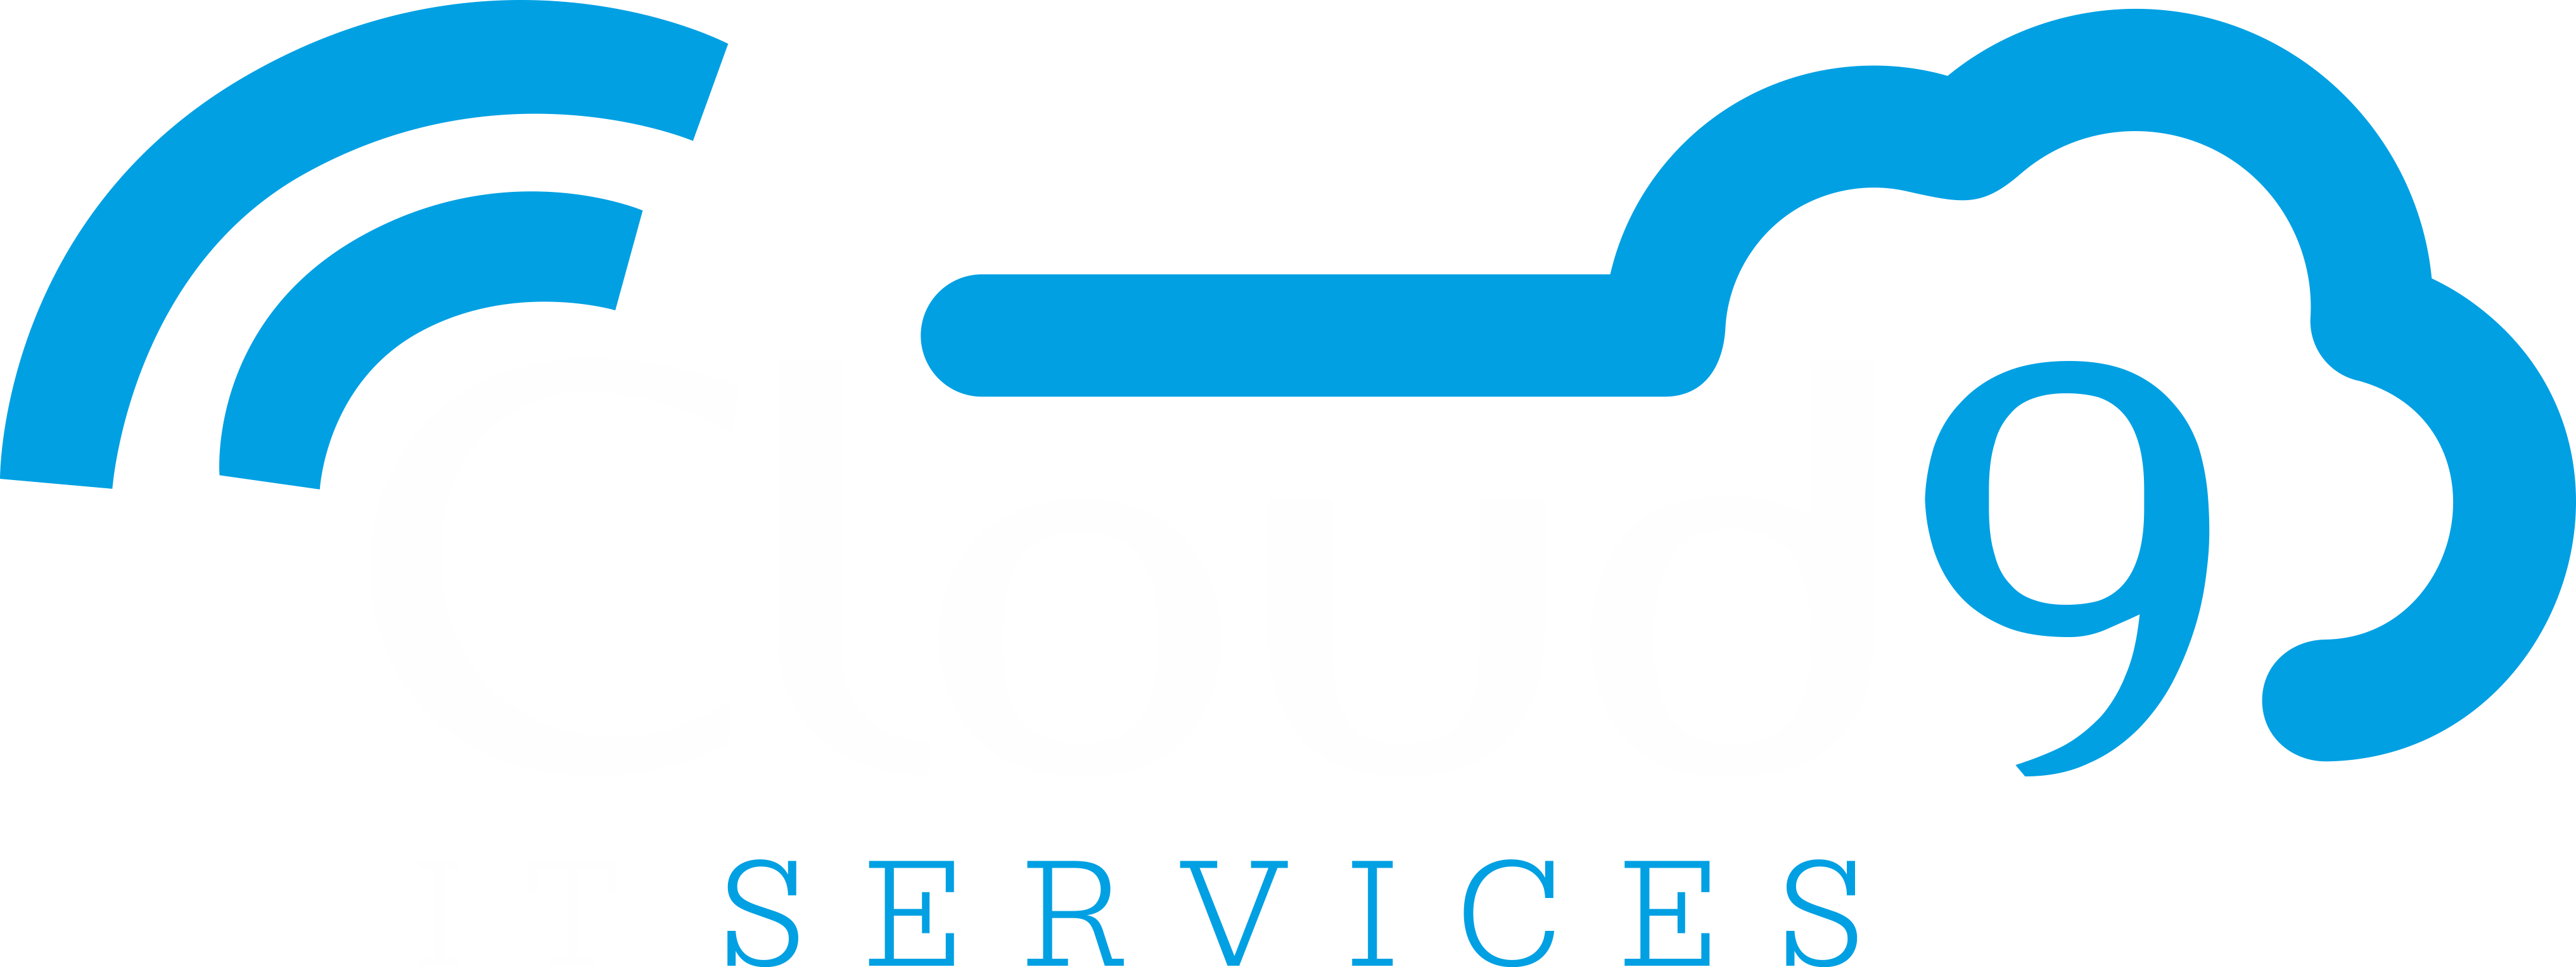 Cloud9 Computer Services Ltd - Cloud9 Computer Services (4066x1527)